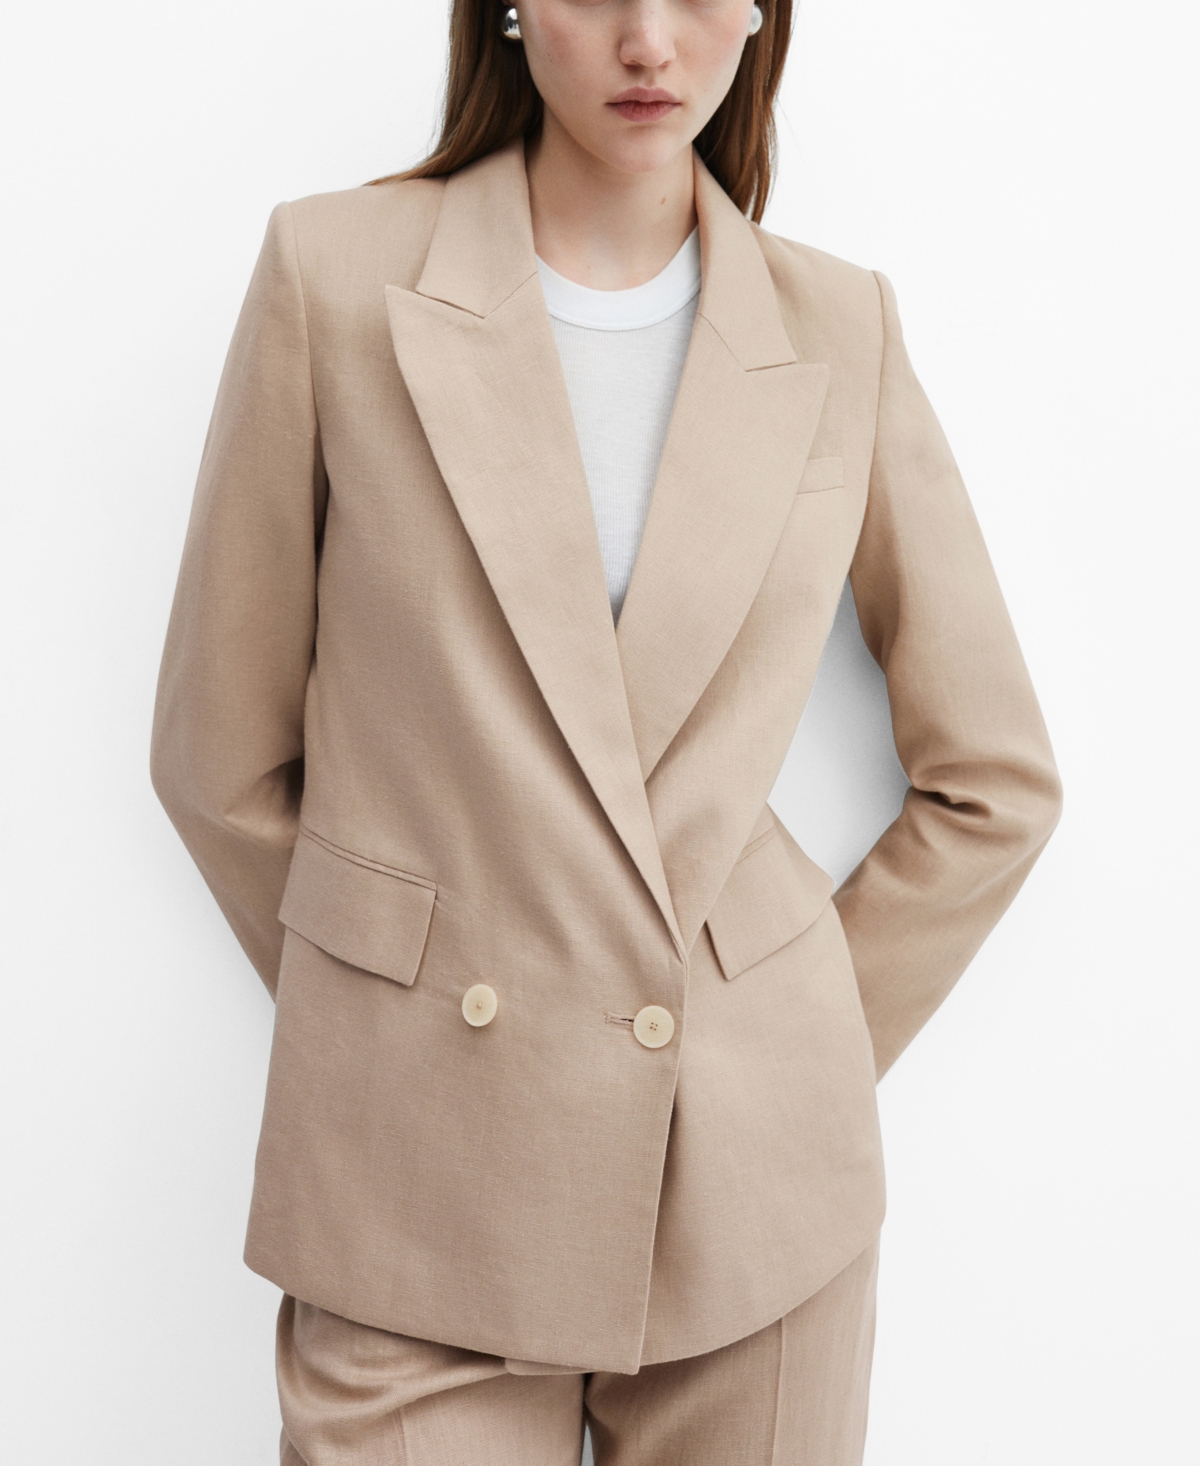 Women's 100% Linen Suit Blazer - Green